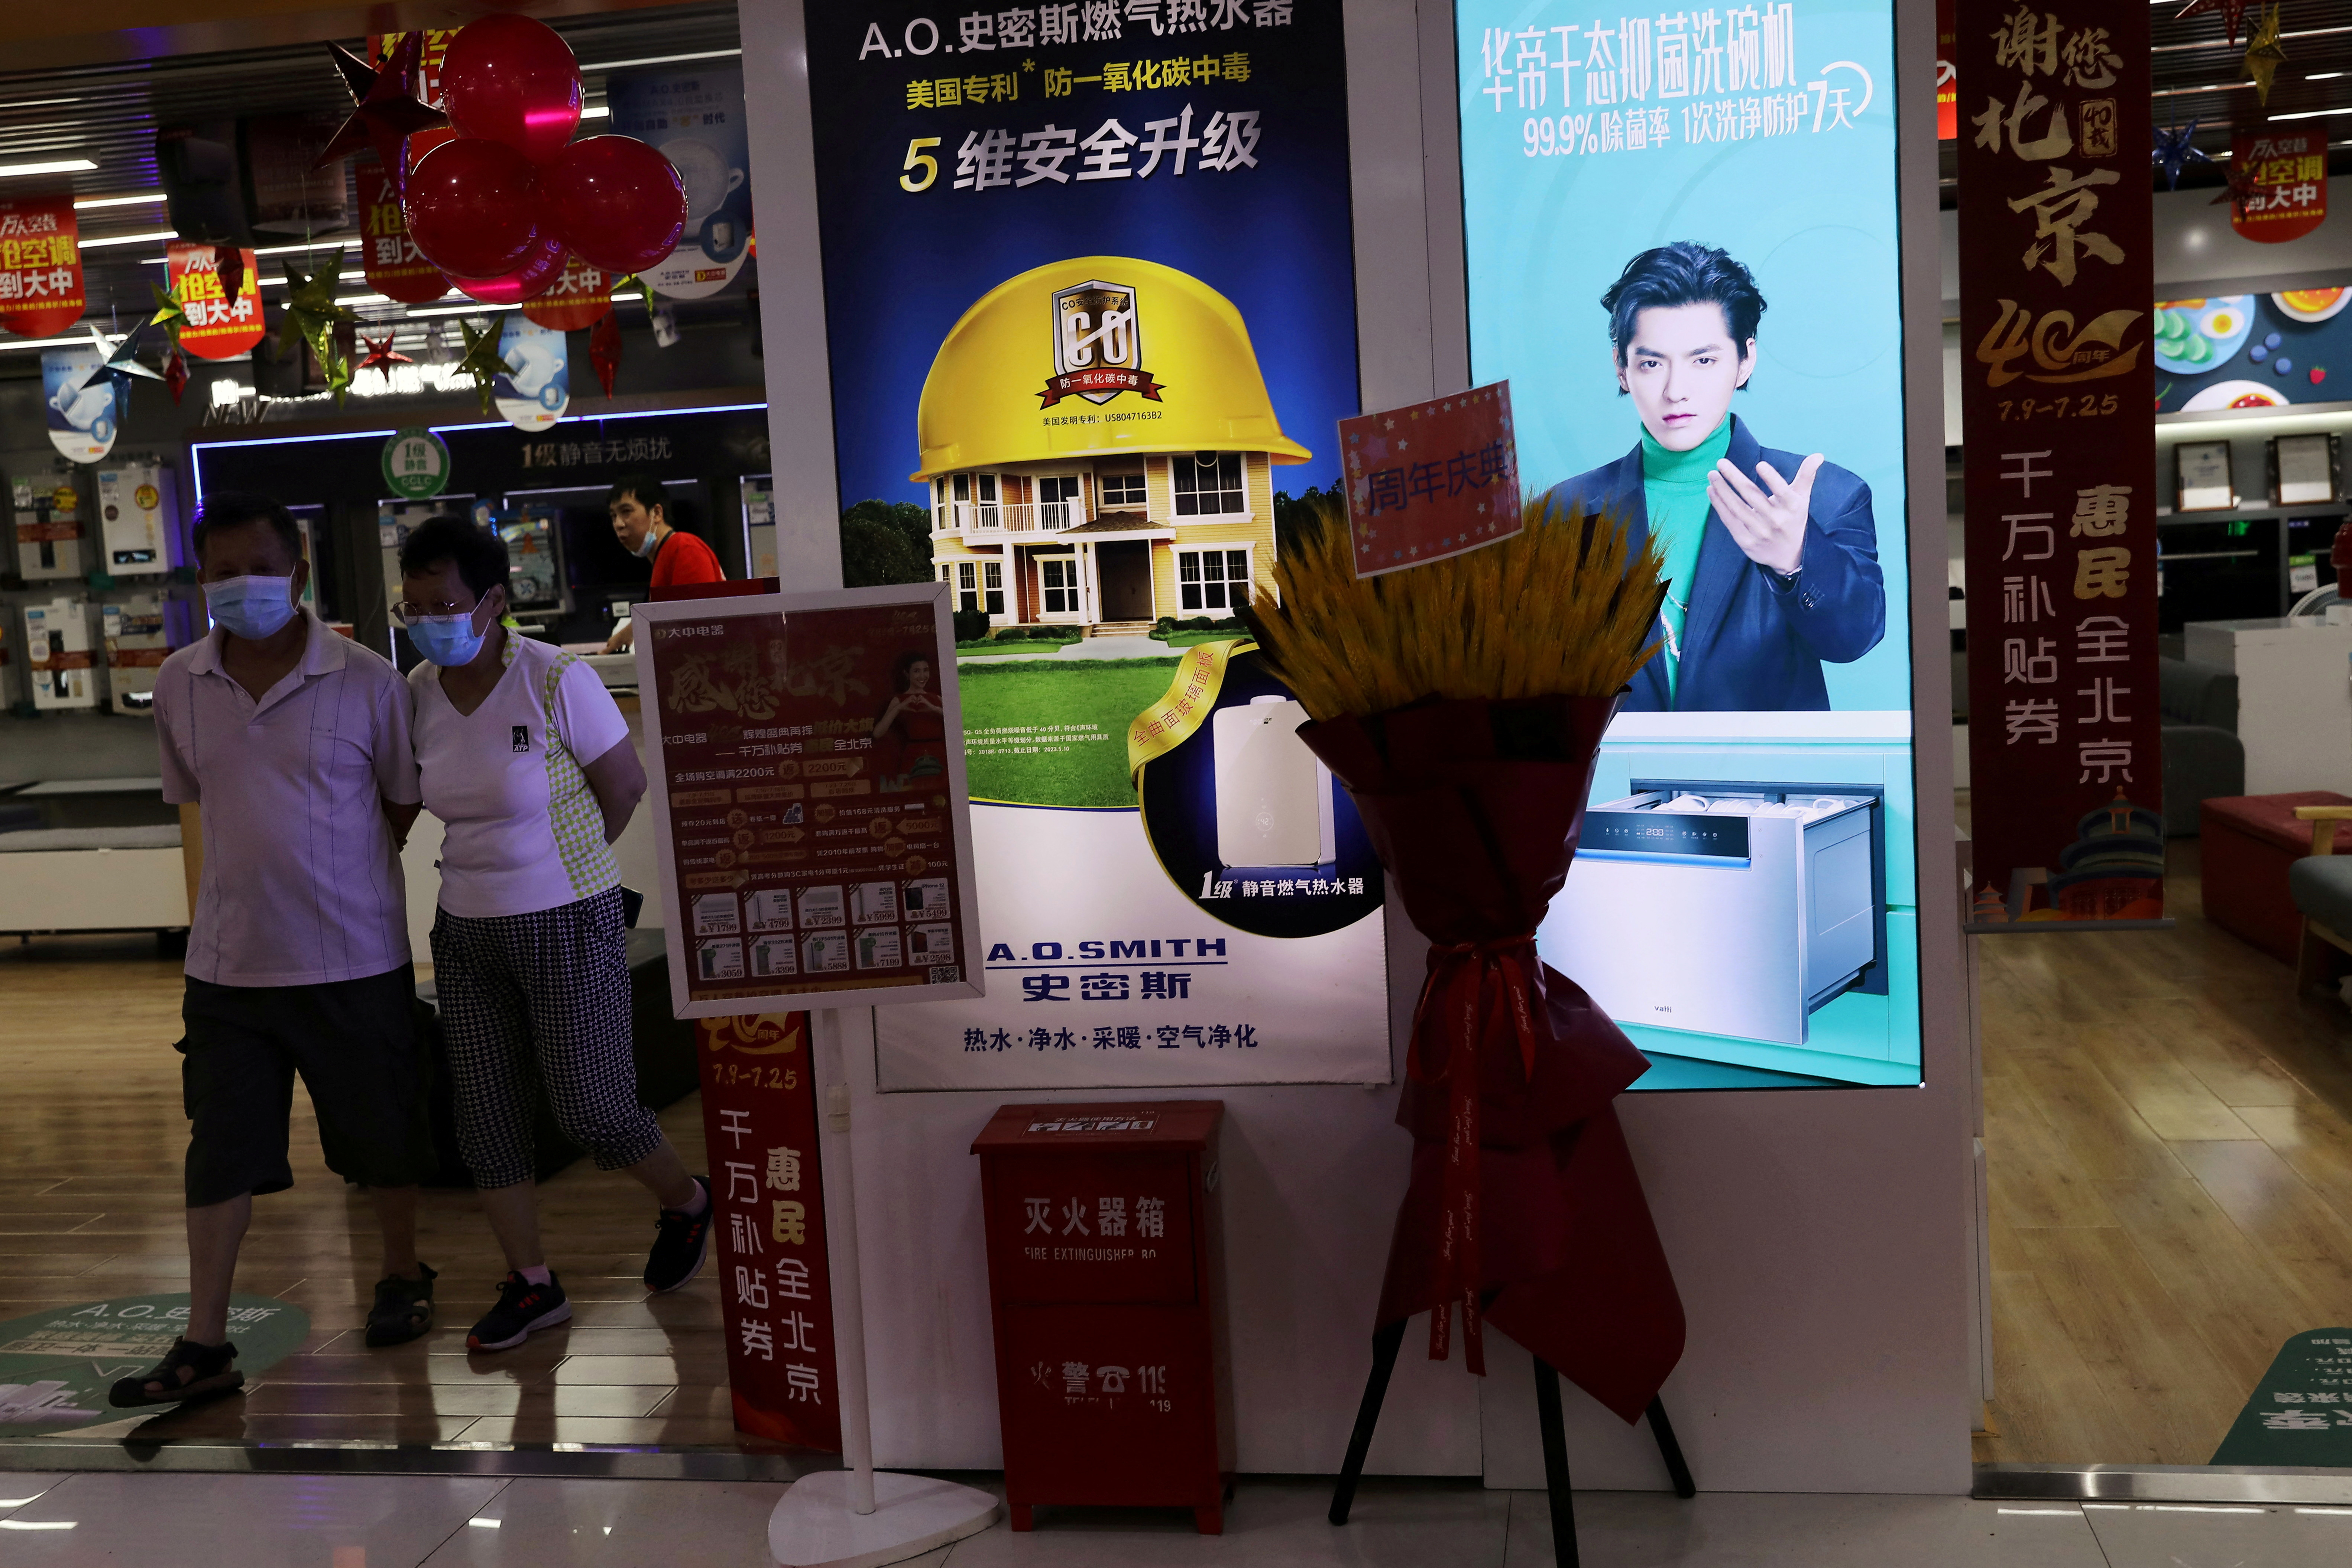 FOTO DE ARCHIVO: La gente camina junto a una tienda de electrodomésticos que muestra un anuncio que muestra al cantante y actor Kris Wu, en un centro comercial en Beijing, China, el 20 de julio de 2021. REUTERS/Tingshu Wang/Foto de archivo